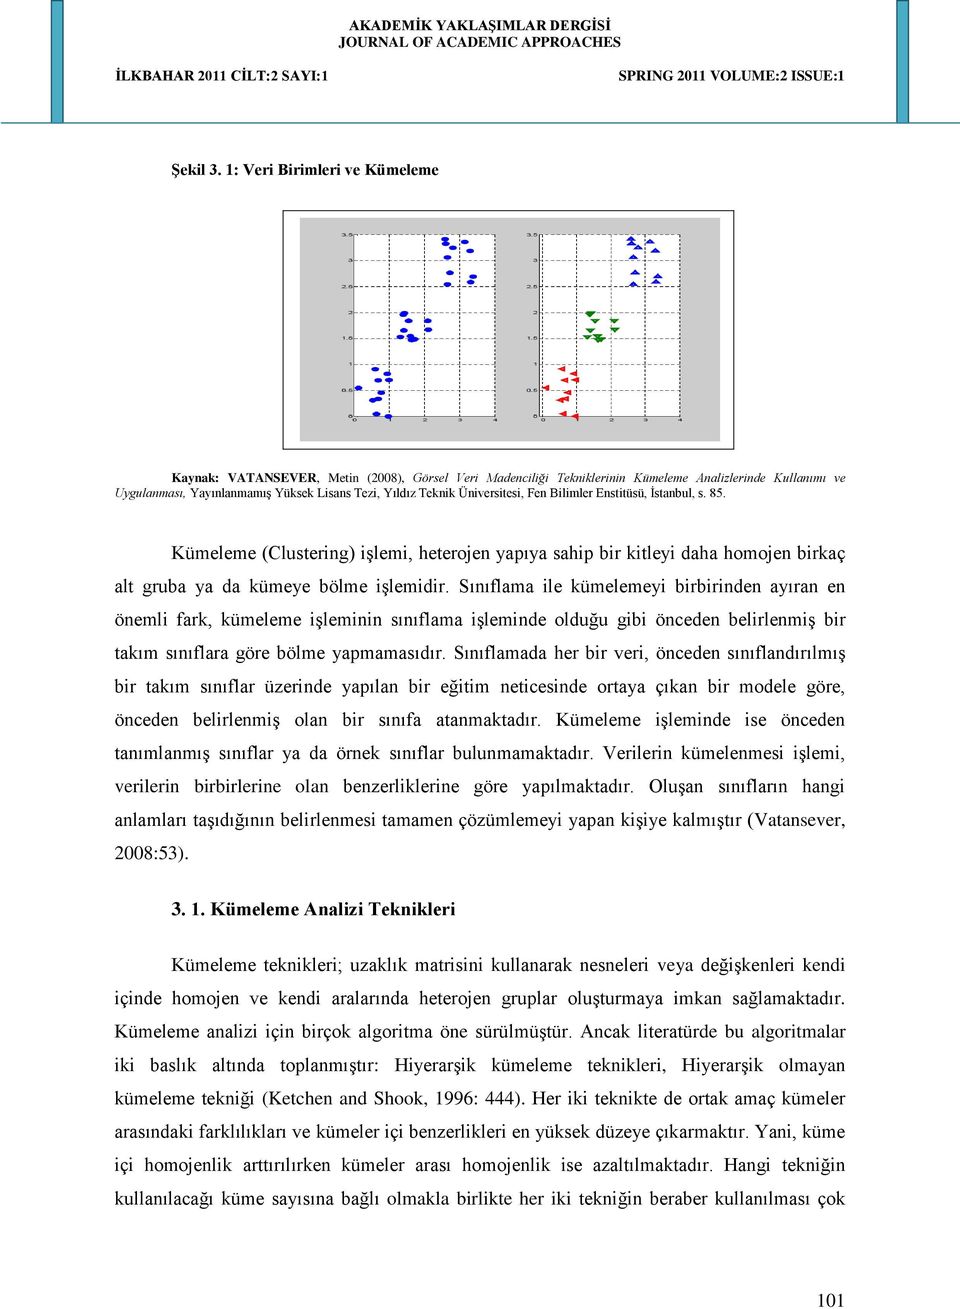 Üniversitesi, Fen Bilimler Enstitüsü, İstanbul, s. 85. Kümeleme (Clustering) işlemi, heterojen yapıya sahip bir kitleyi daha homojen birkaç alt gruba ya da kümeye bölme işlemidir.